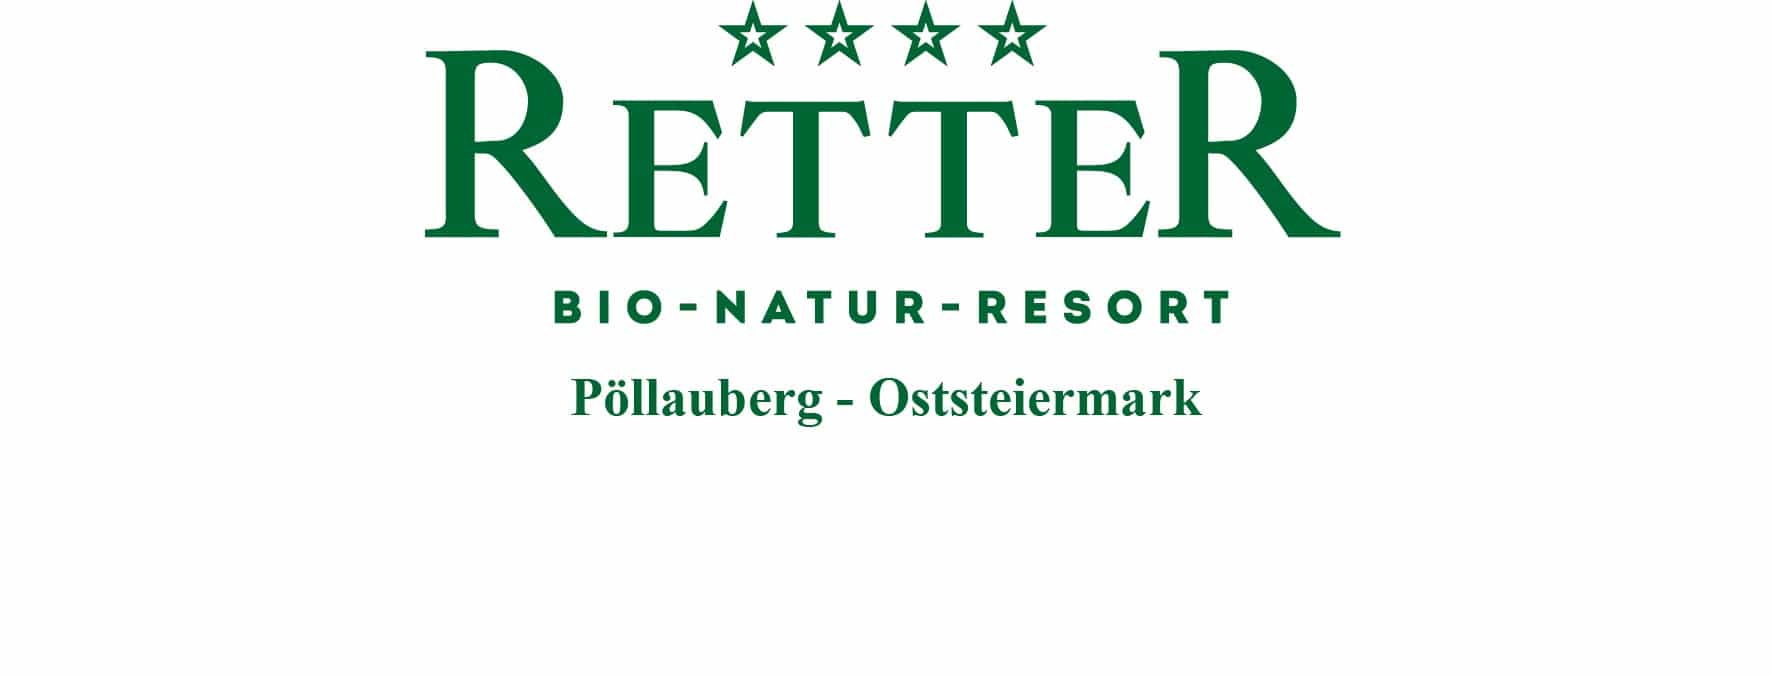 Retter Bio-Natur-Resort_Seminarhotel__Pöllauberg_Oststeiermark_Logo_gruen